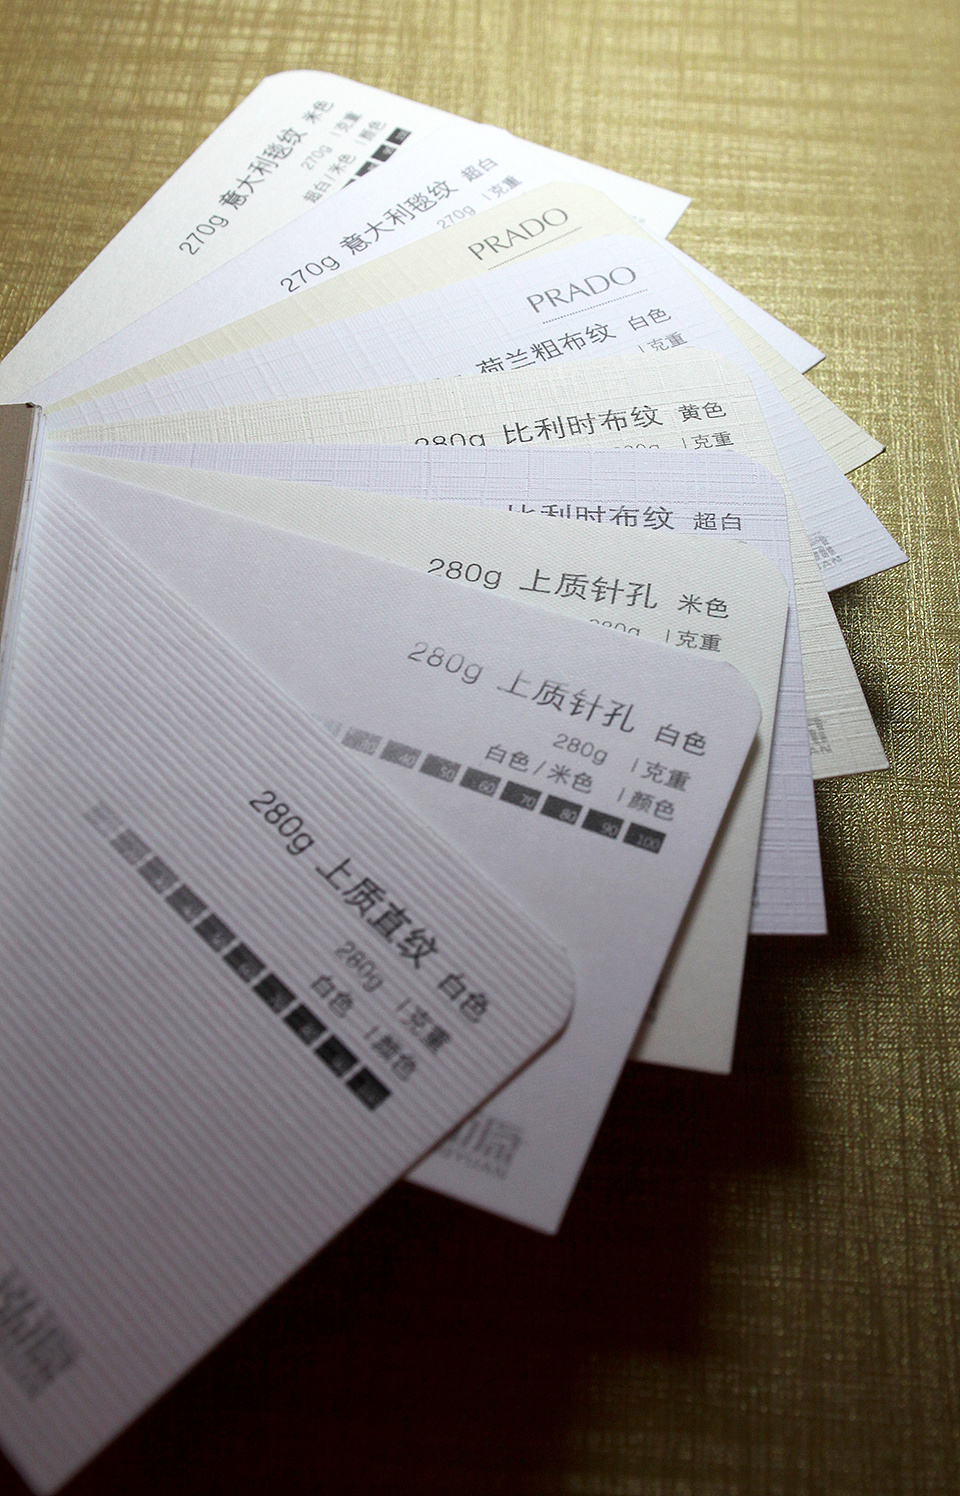 一些常用的名片用纸 和 工艺 北京厂家的纸样